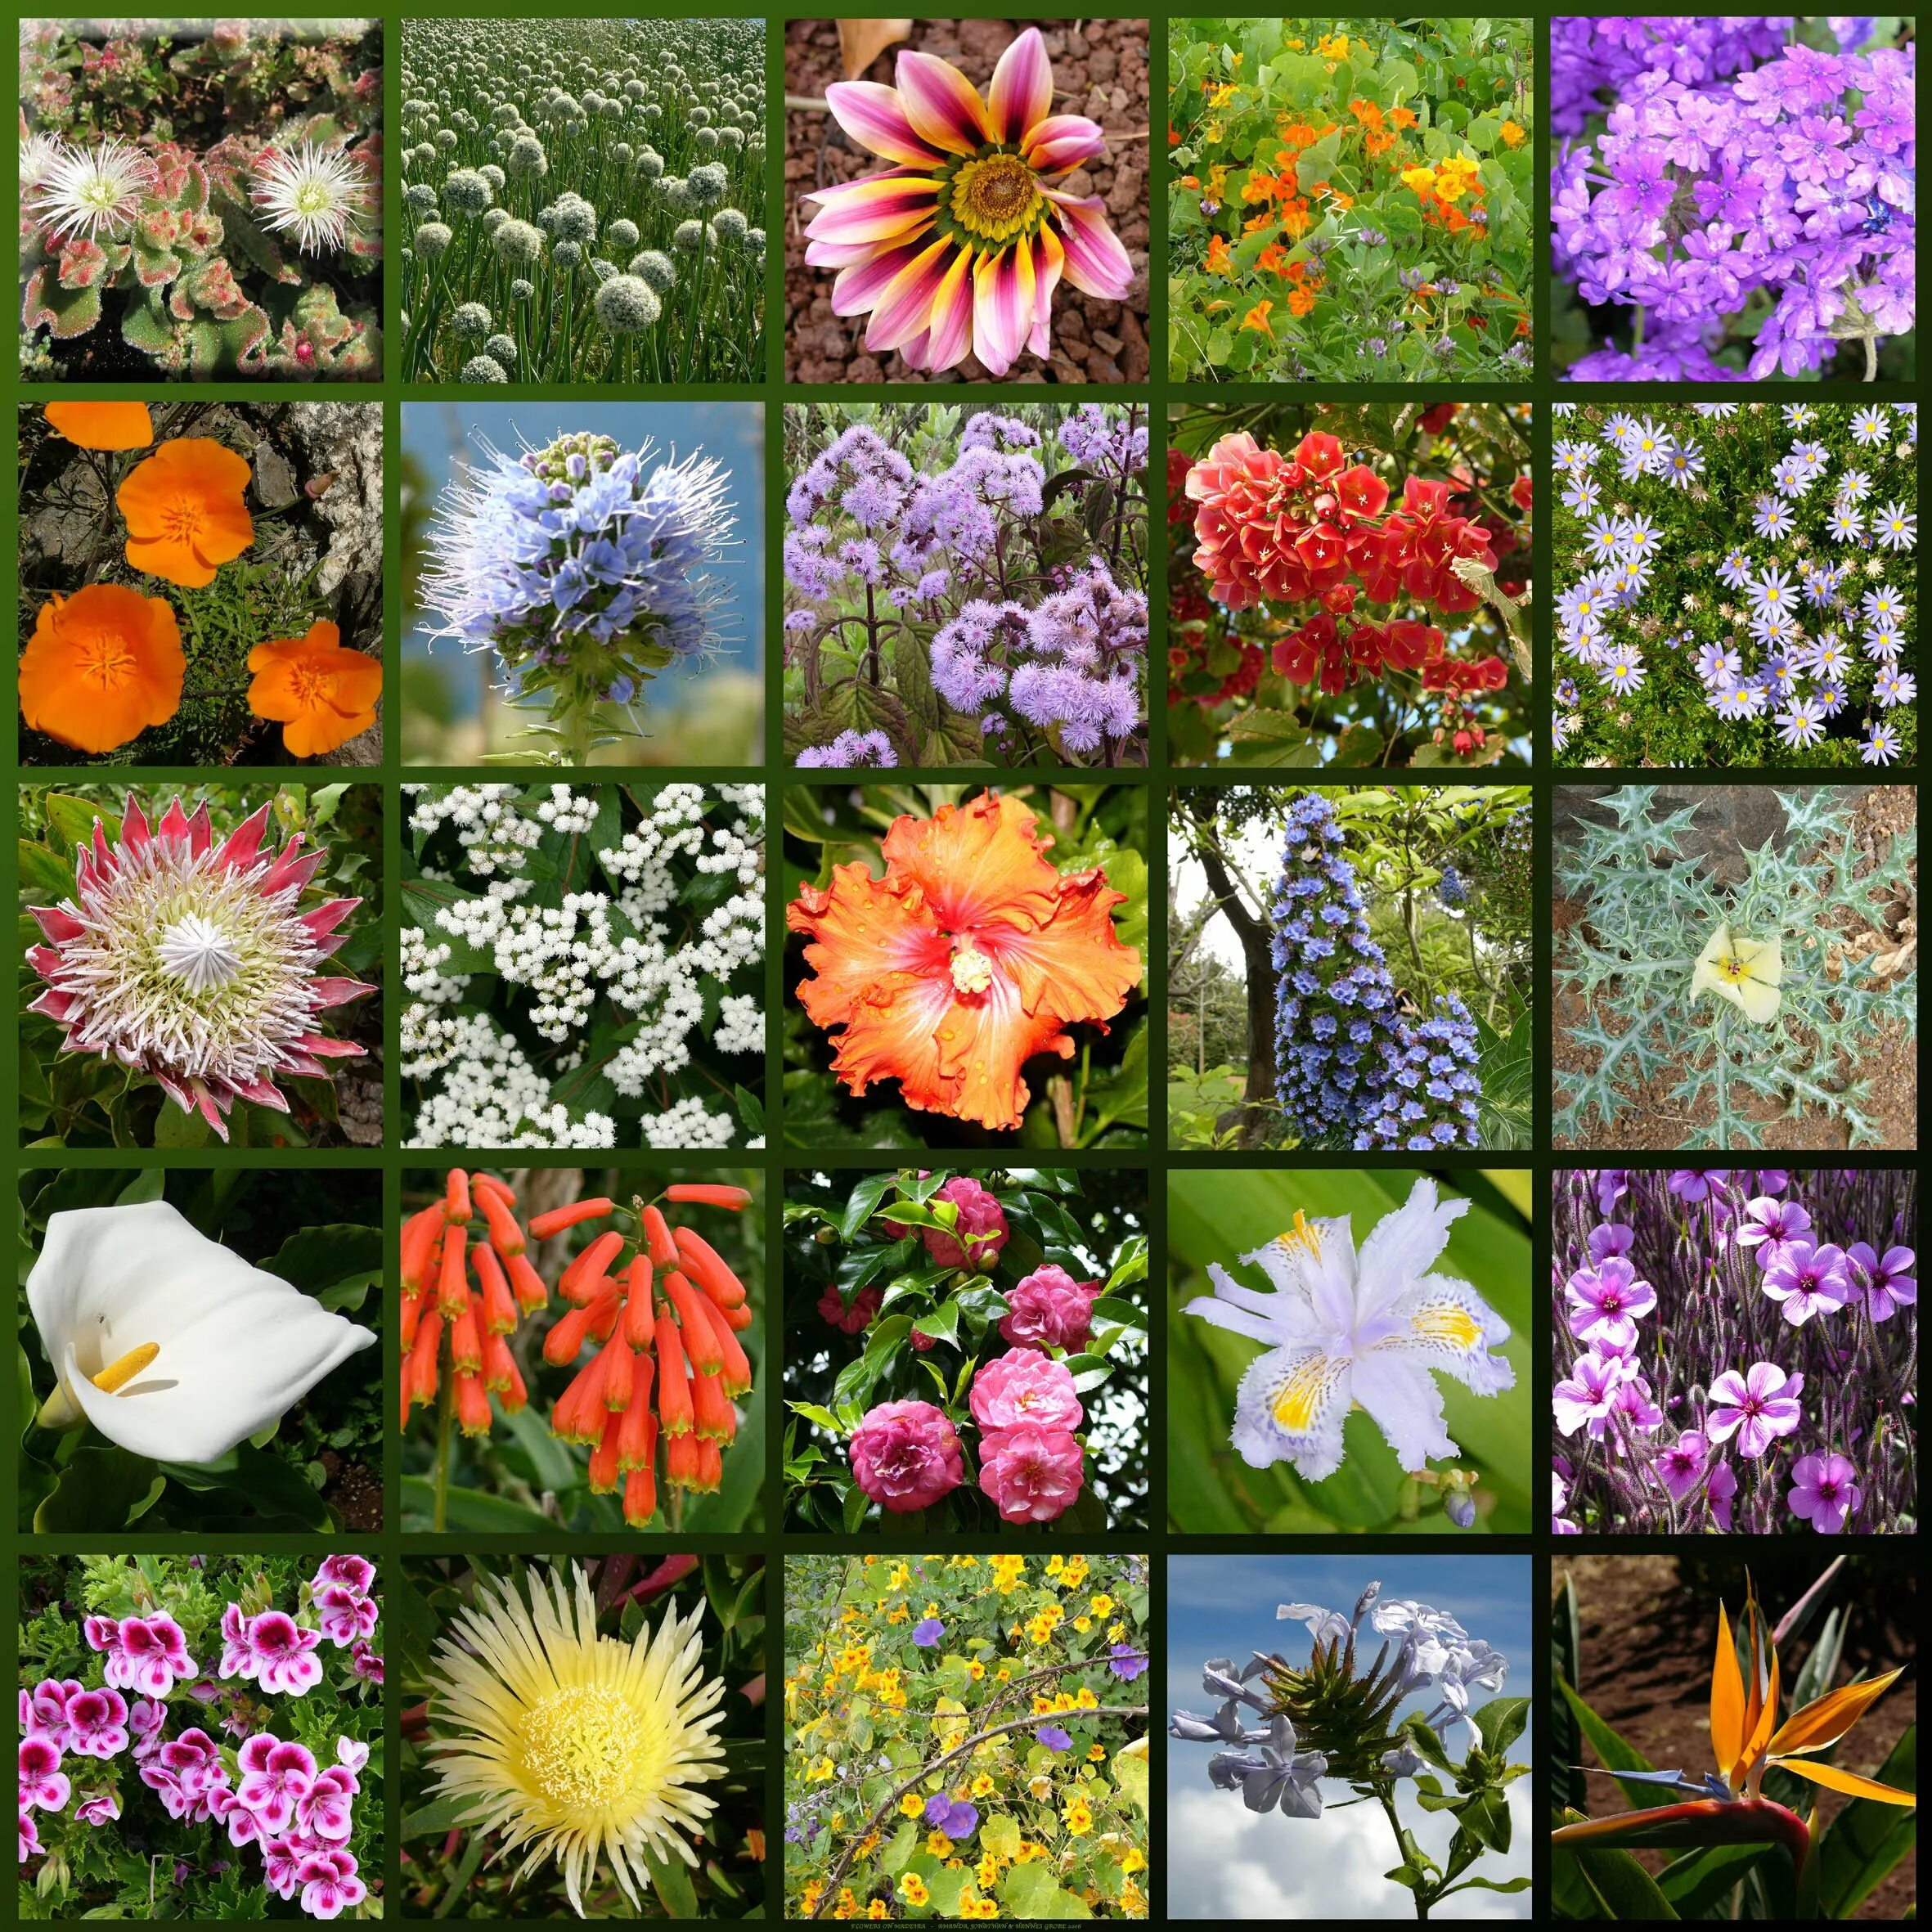 Разные цветы точно по времени. Разные растения. Цветковые растения. Разные цветы. Многообразие цветов в природе.